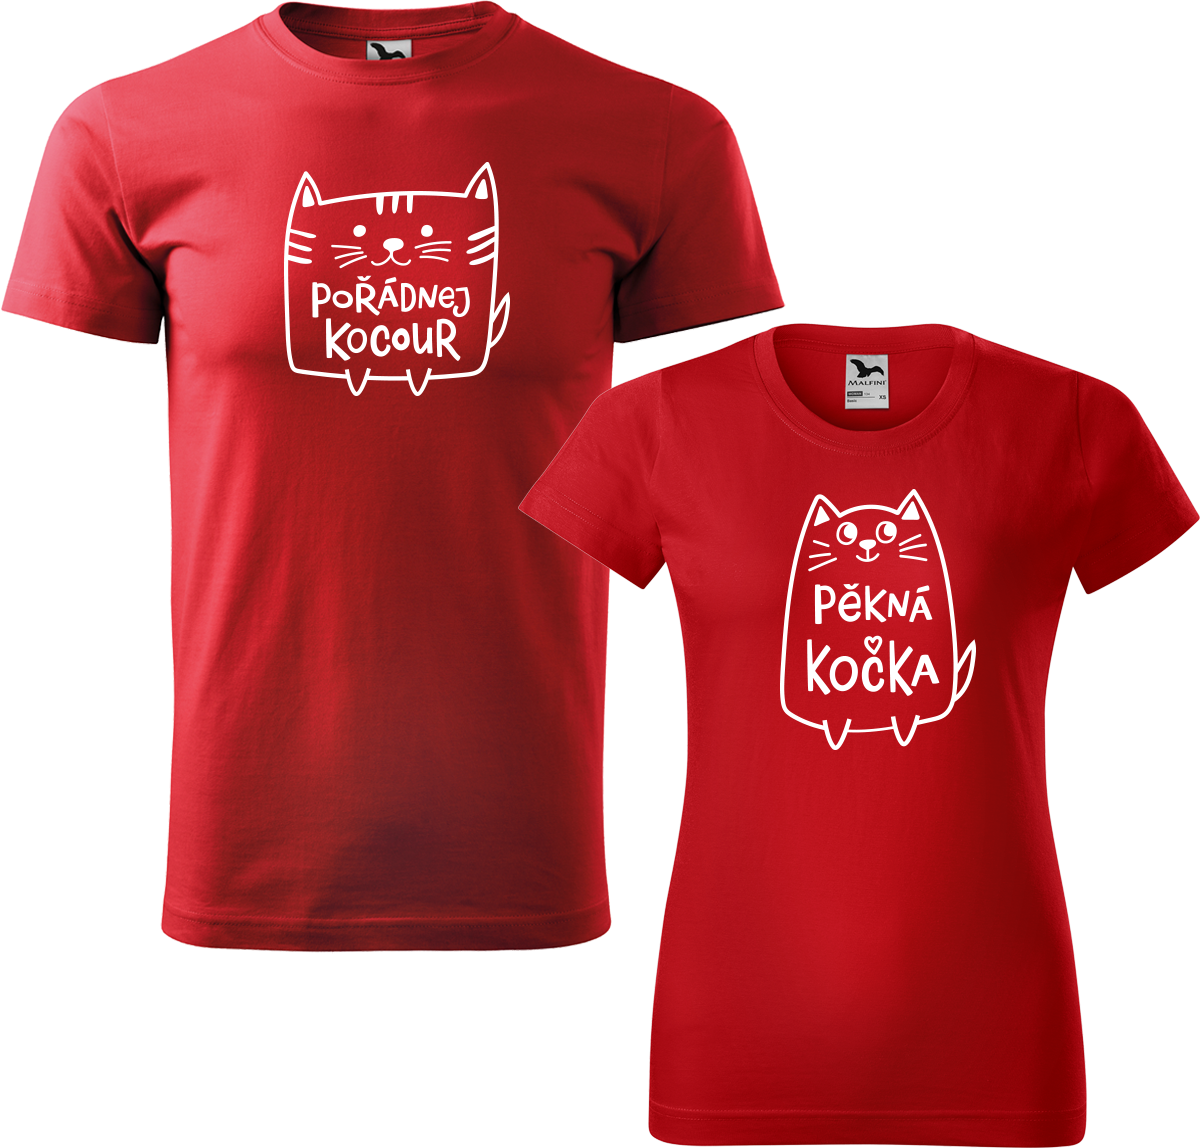 Trička pro páry - Pořádnej kocour a pěkná kočka Barva: Červená (07), Velikost dámské tričko: S, Velikost pánské tričko: L